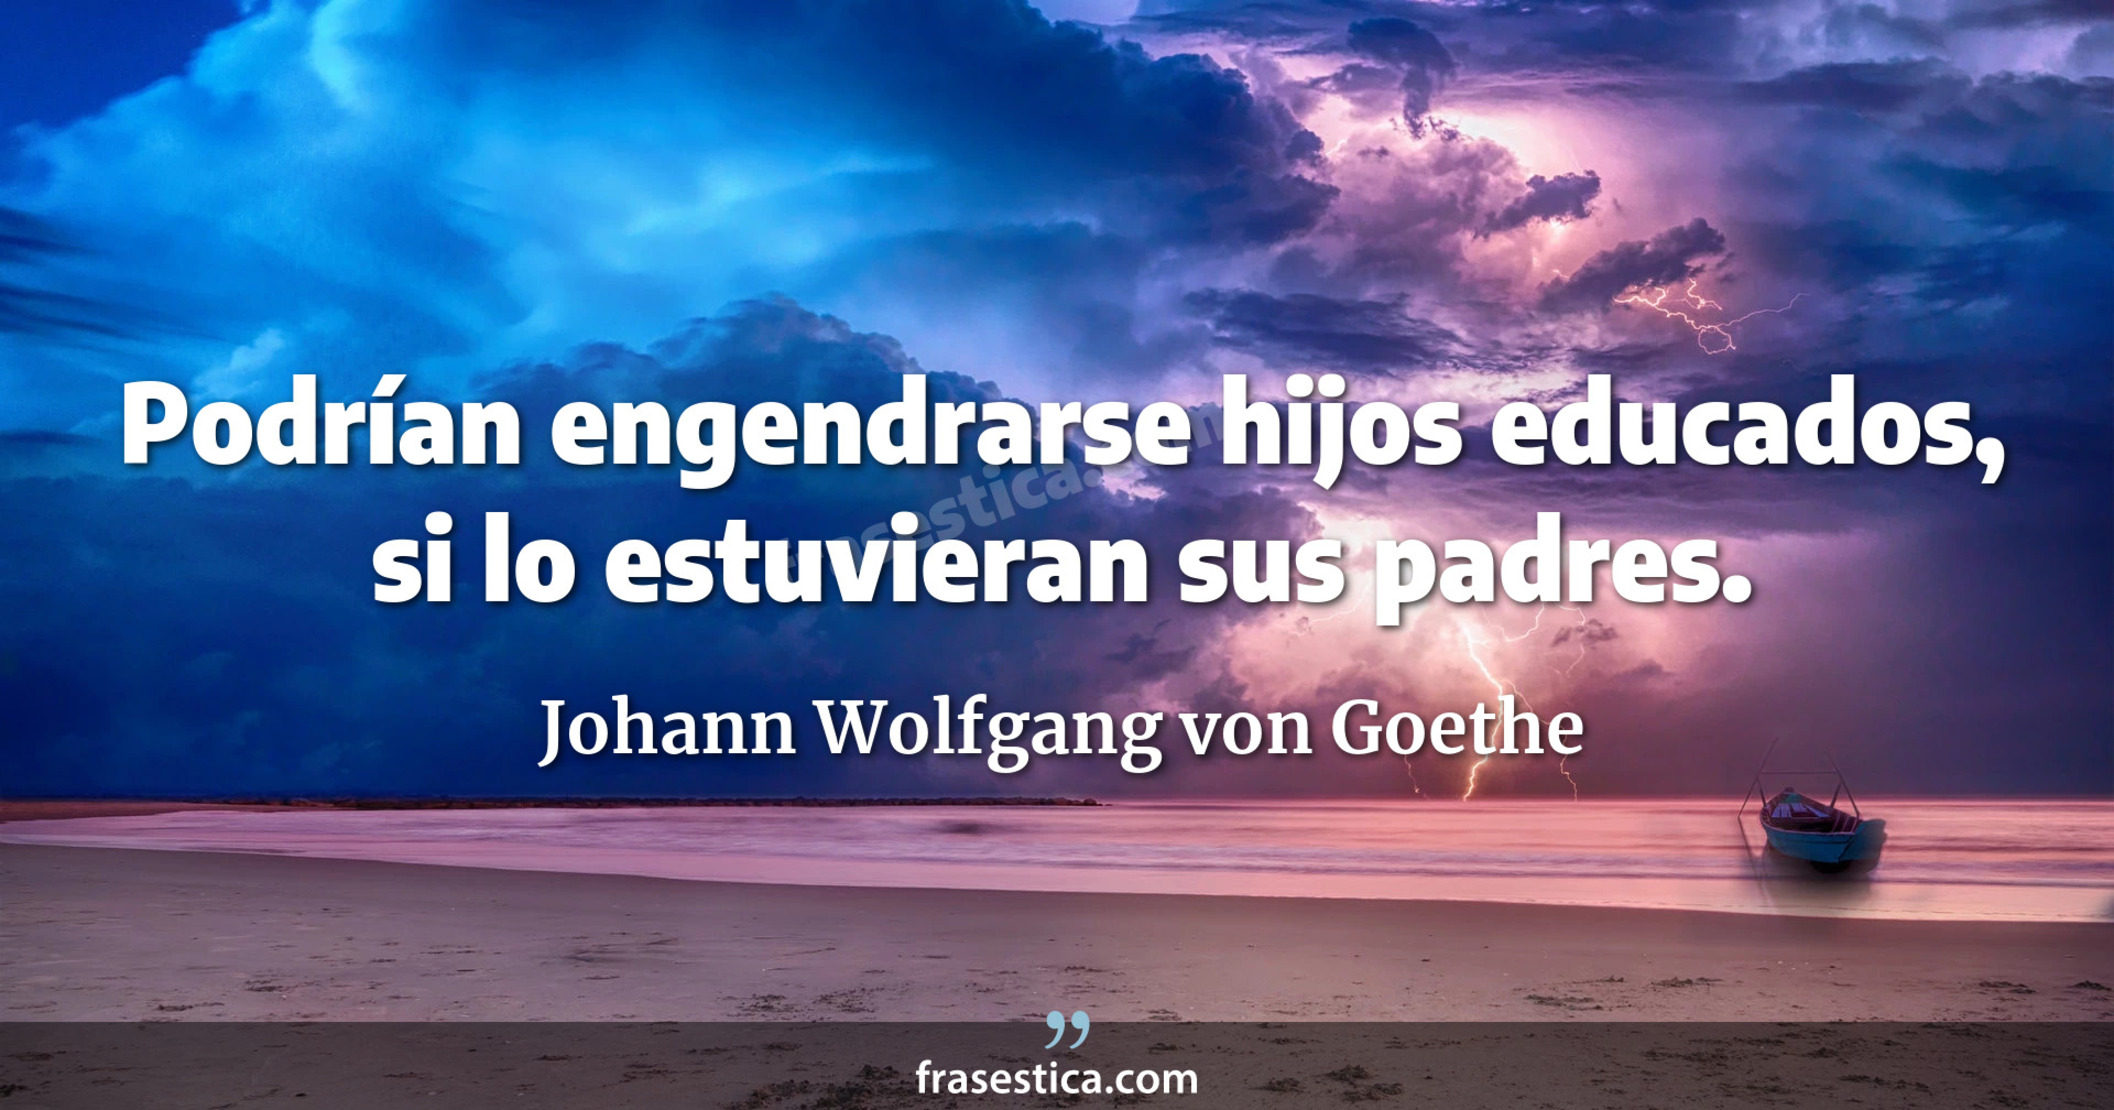 Podrían engendrarse hijos educados, si lo estuvieran sus padres. - Johann Wolfgang von Goethe